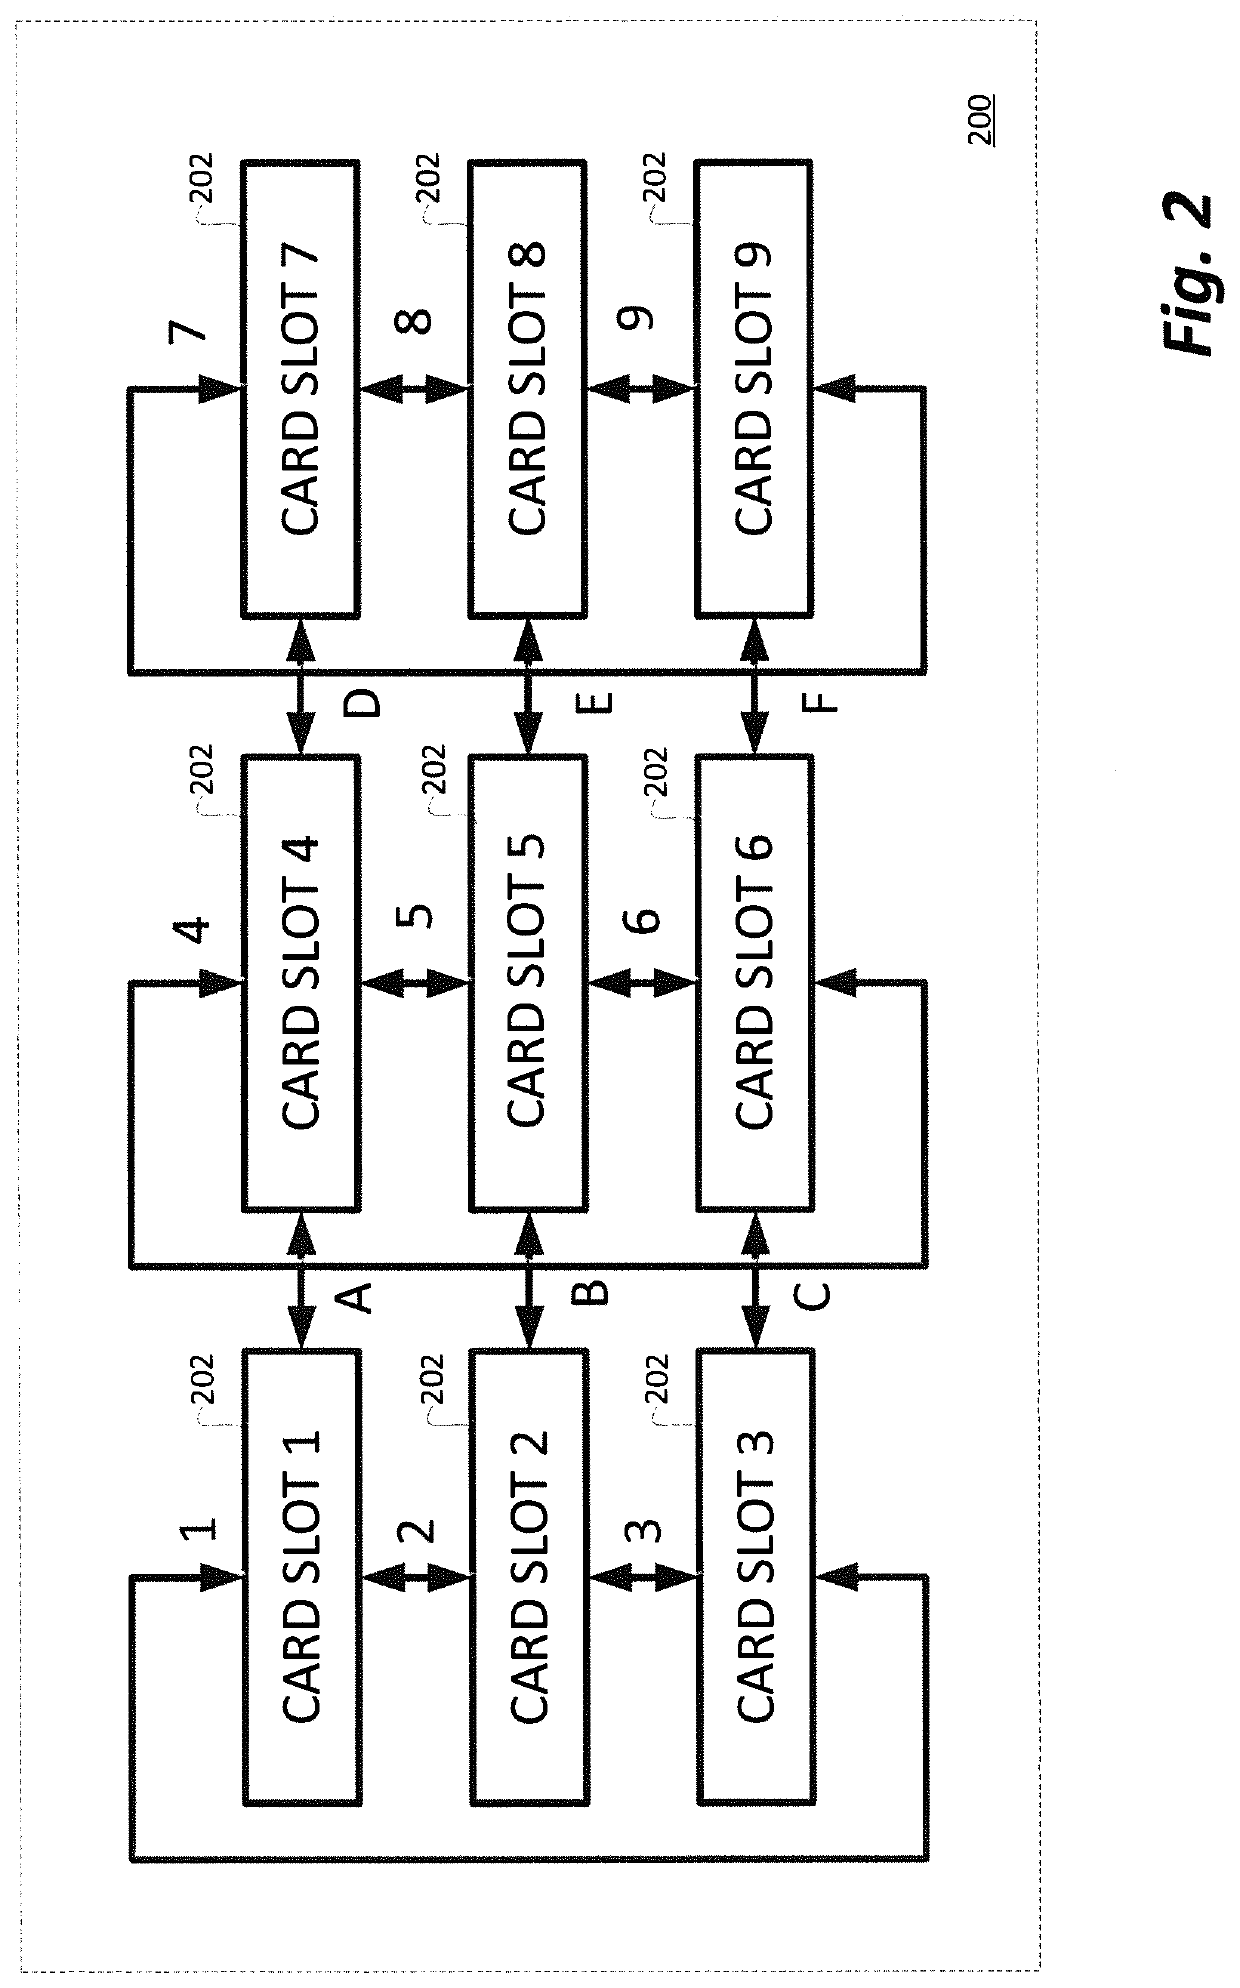 Multi-processor computer architecture incorporating distributed multi-ported common memory modules